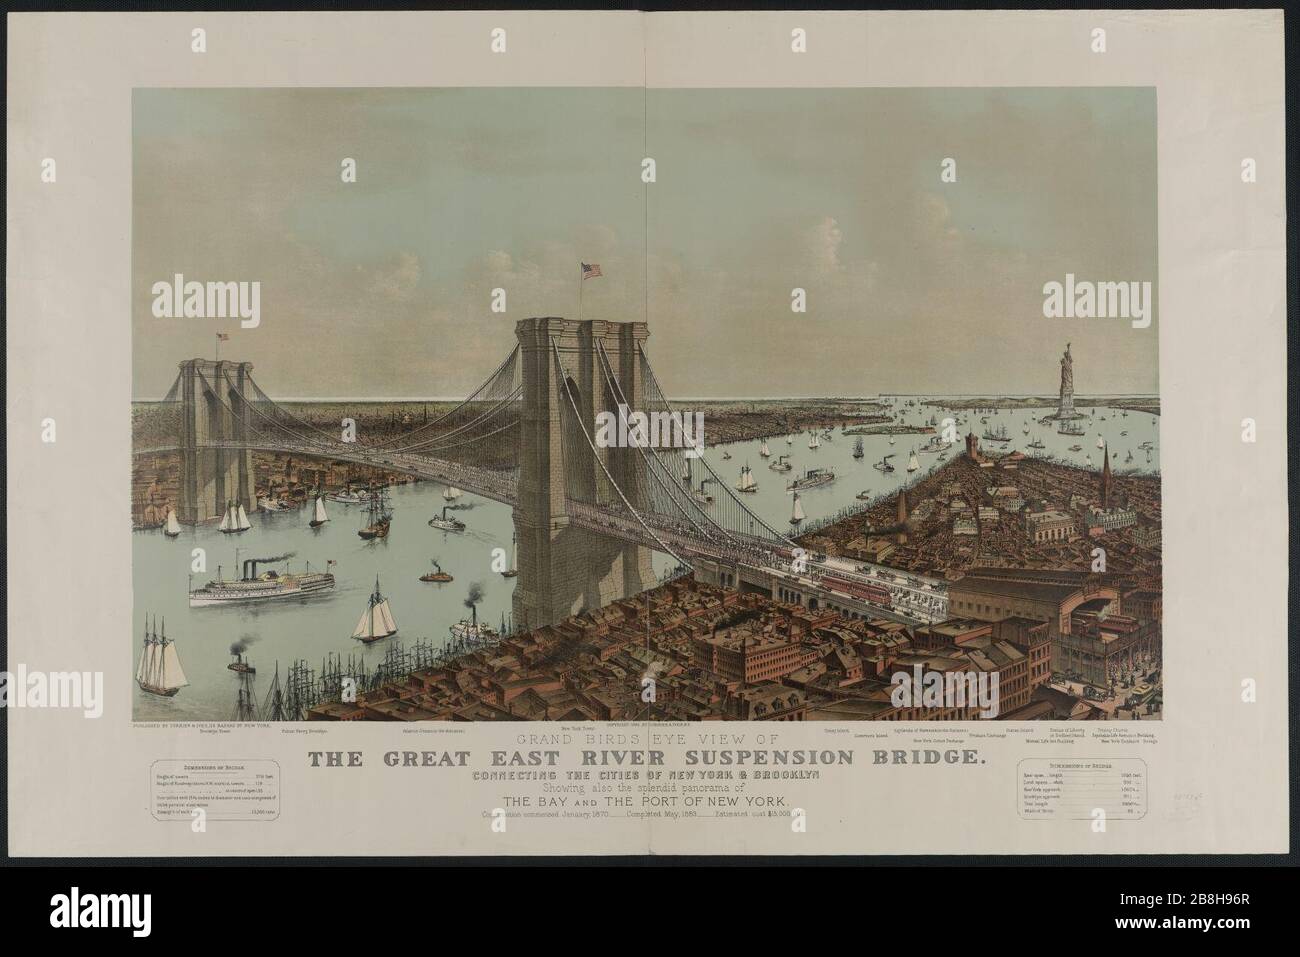 Vista dall'alto del Great East River, ponte sospeso che collega le città di New York e Brooklyn, che mostra anche lo splendido panorama della baia e del porto di New York. Foto Stock